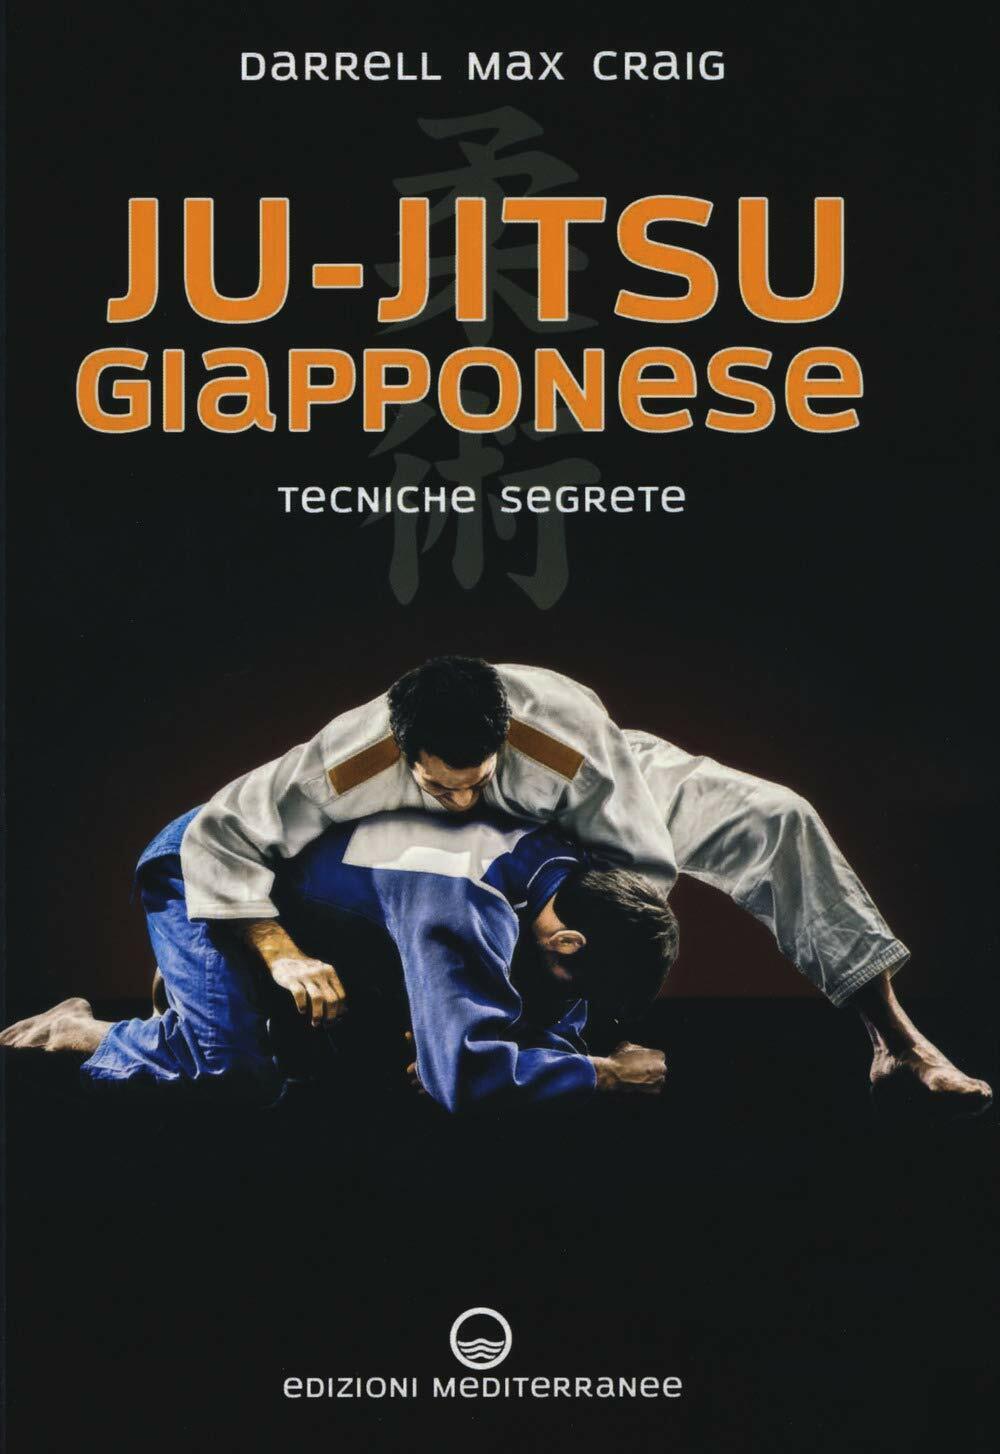 Ju-jitsu giapponese - Darrell Max Craig - Edizioni Mediterranee, 2019